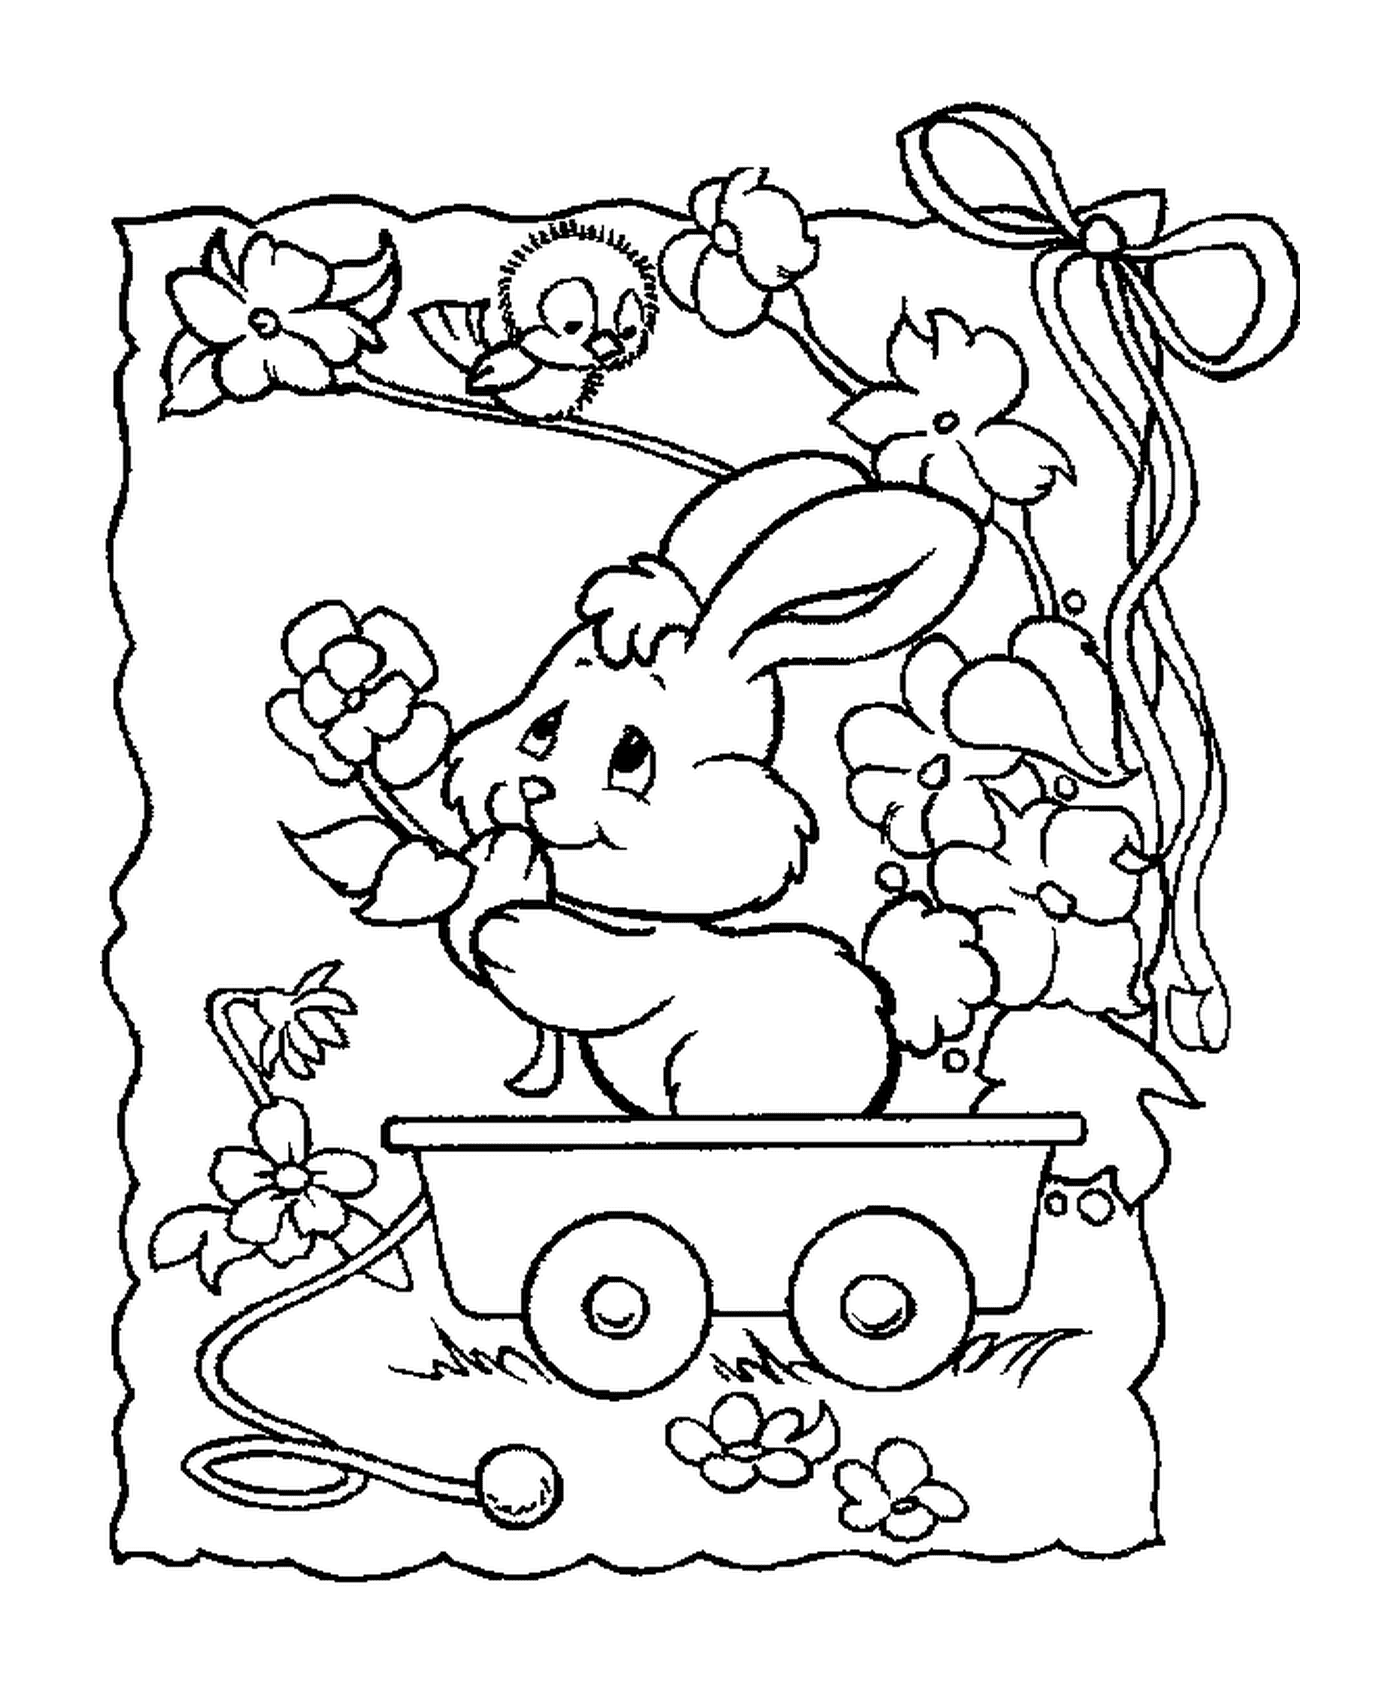  Un conejo sentado en una carreta 